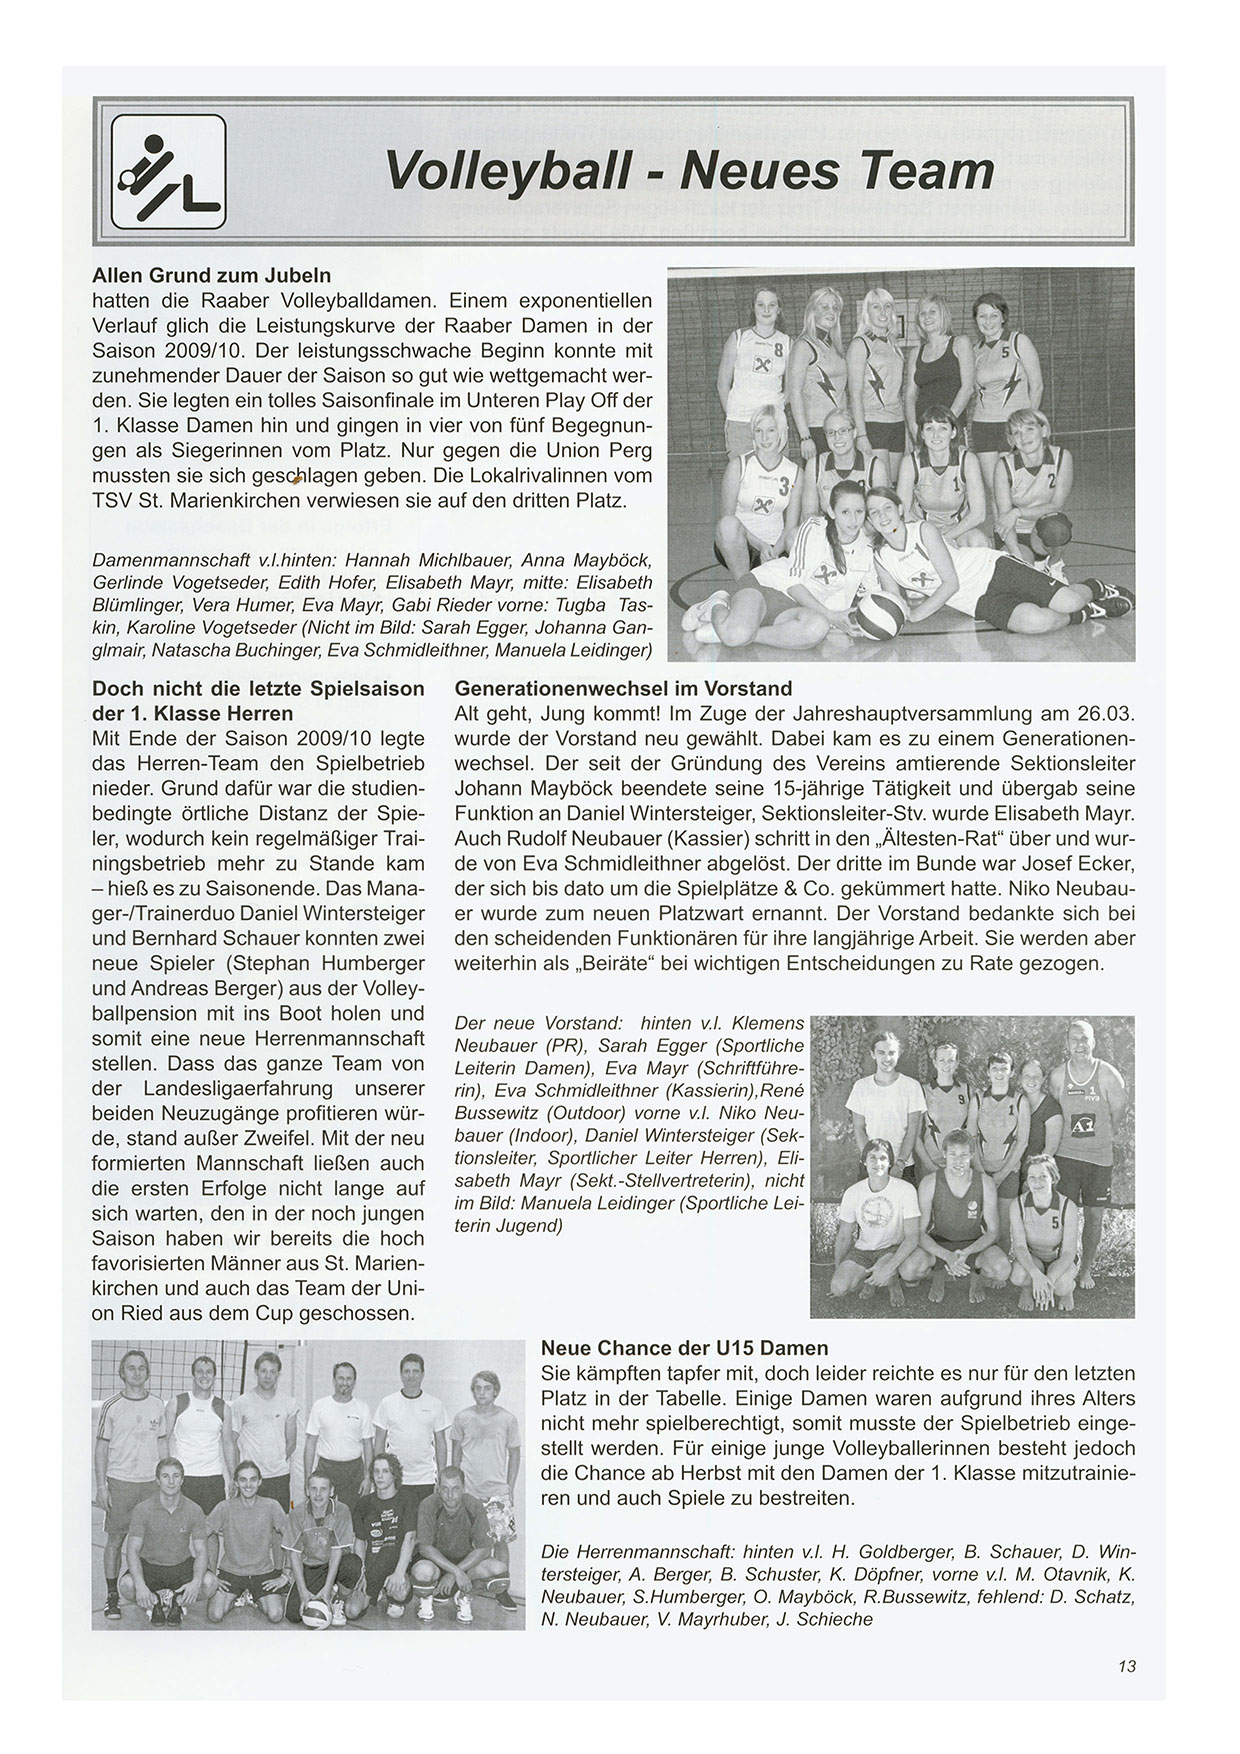 Unionzeitung 2010 - Seite 13